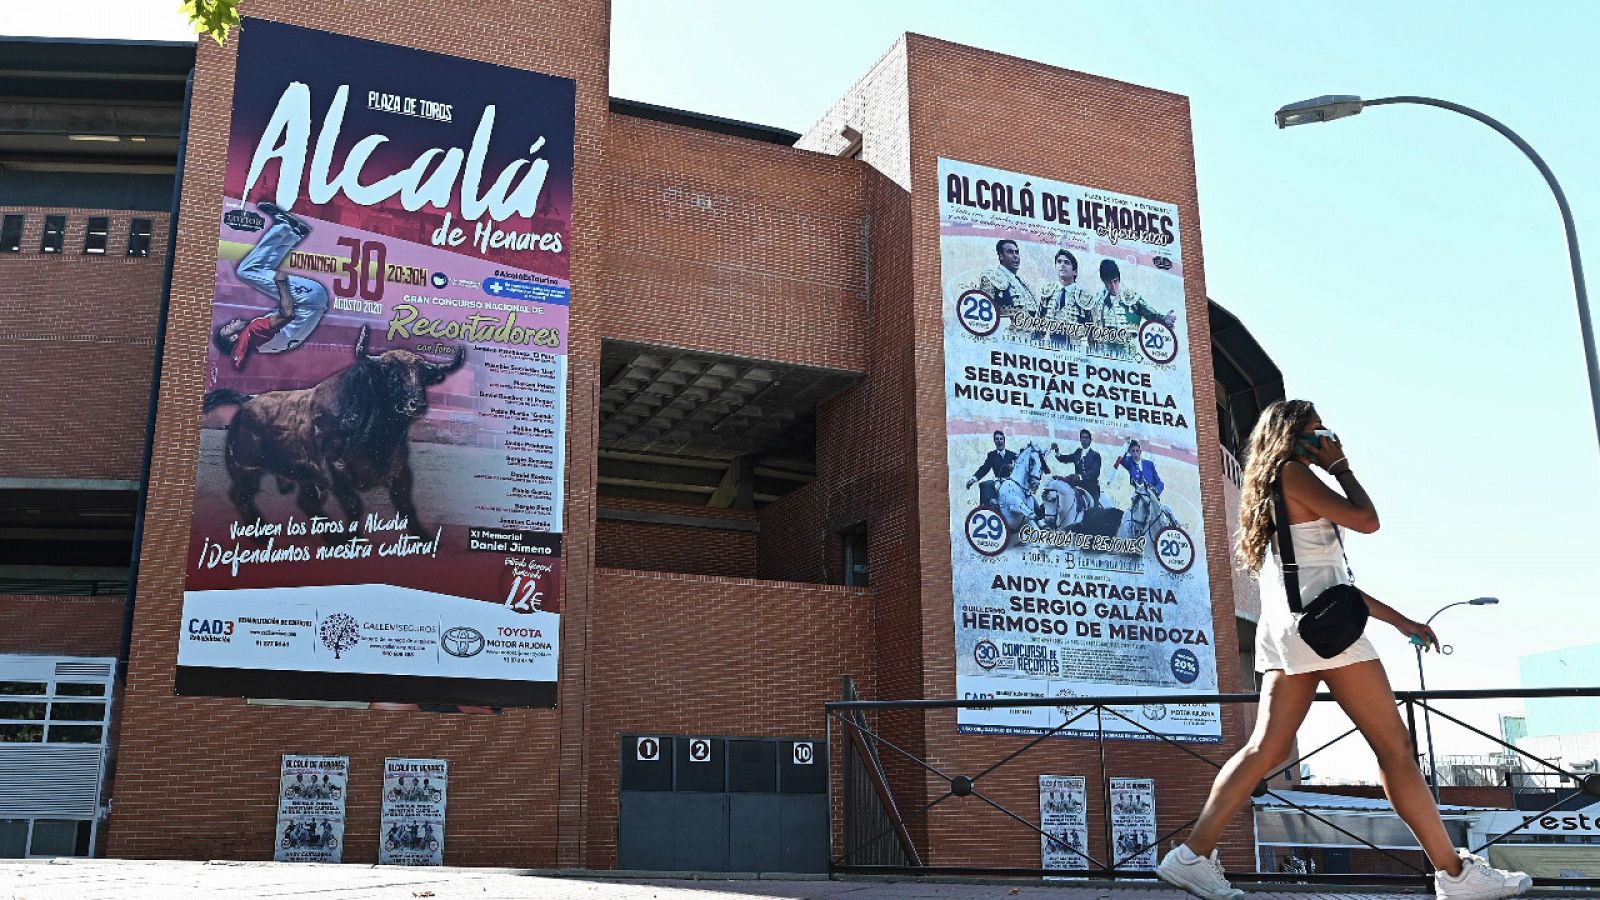 La Comunidad de Madrid rectifica y cancela la feria taurina de Alcalá de Henares por "prudencia"